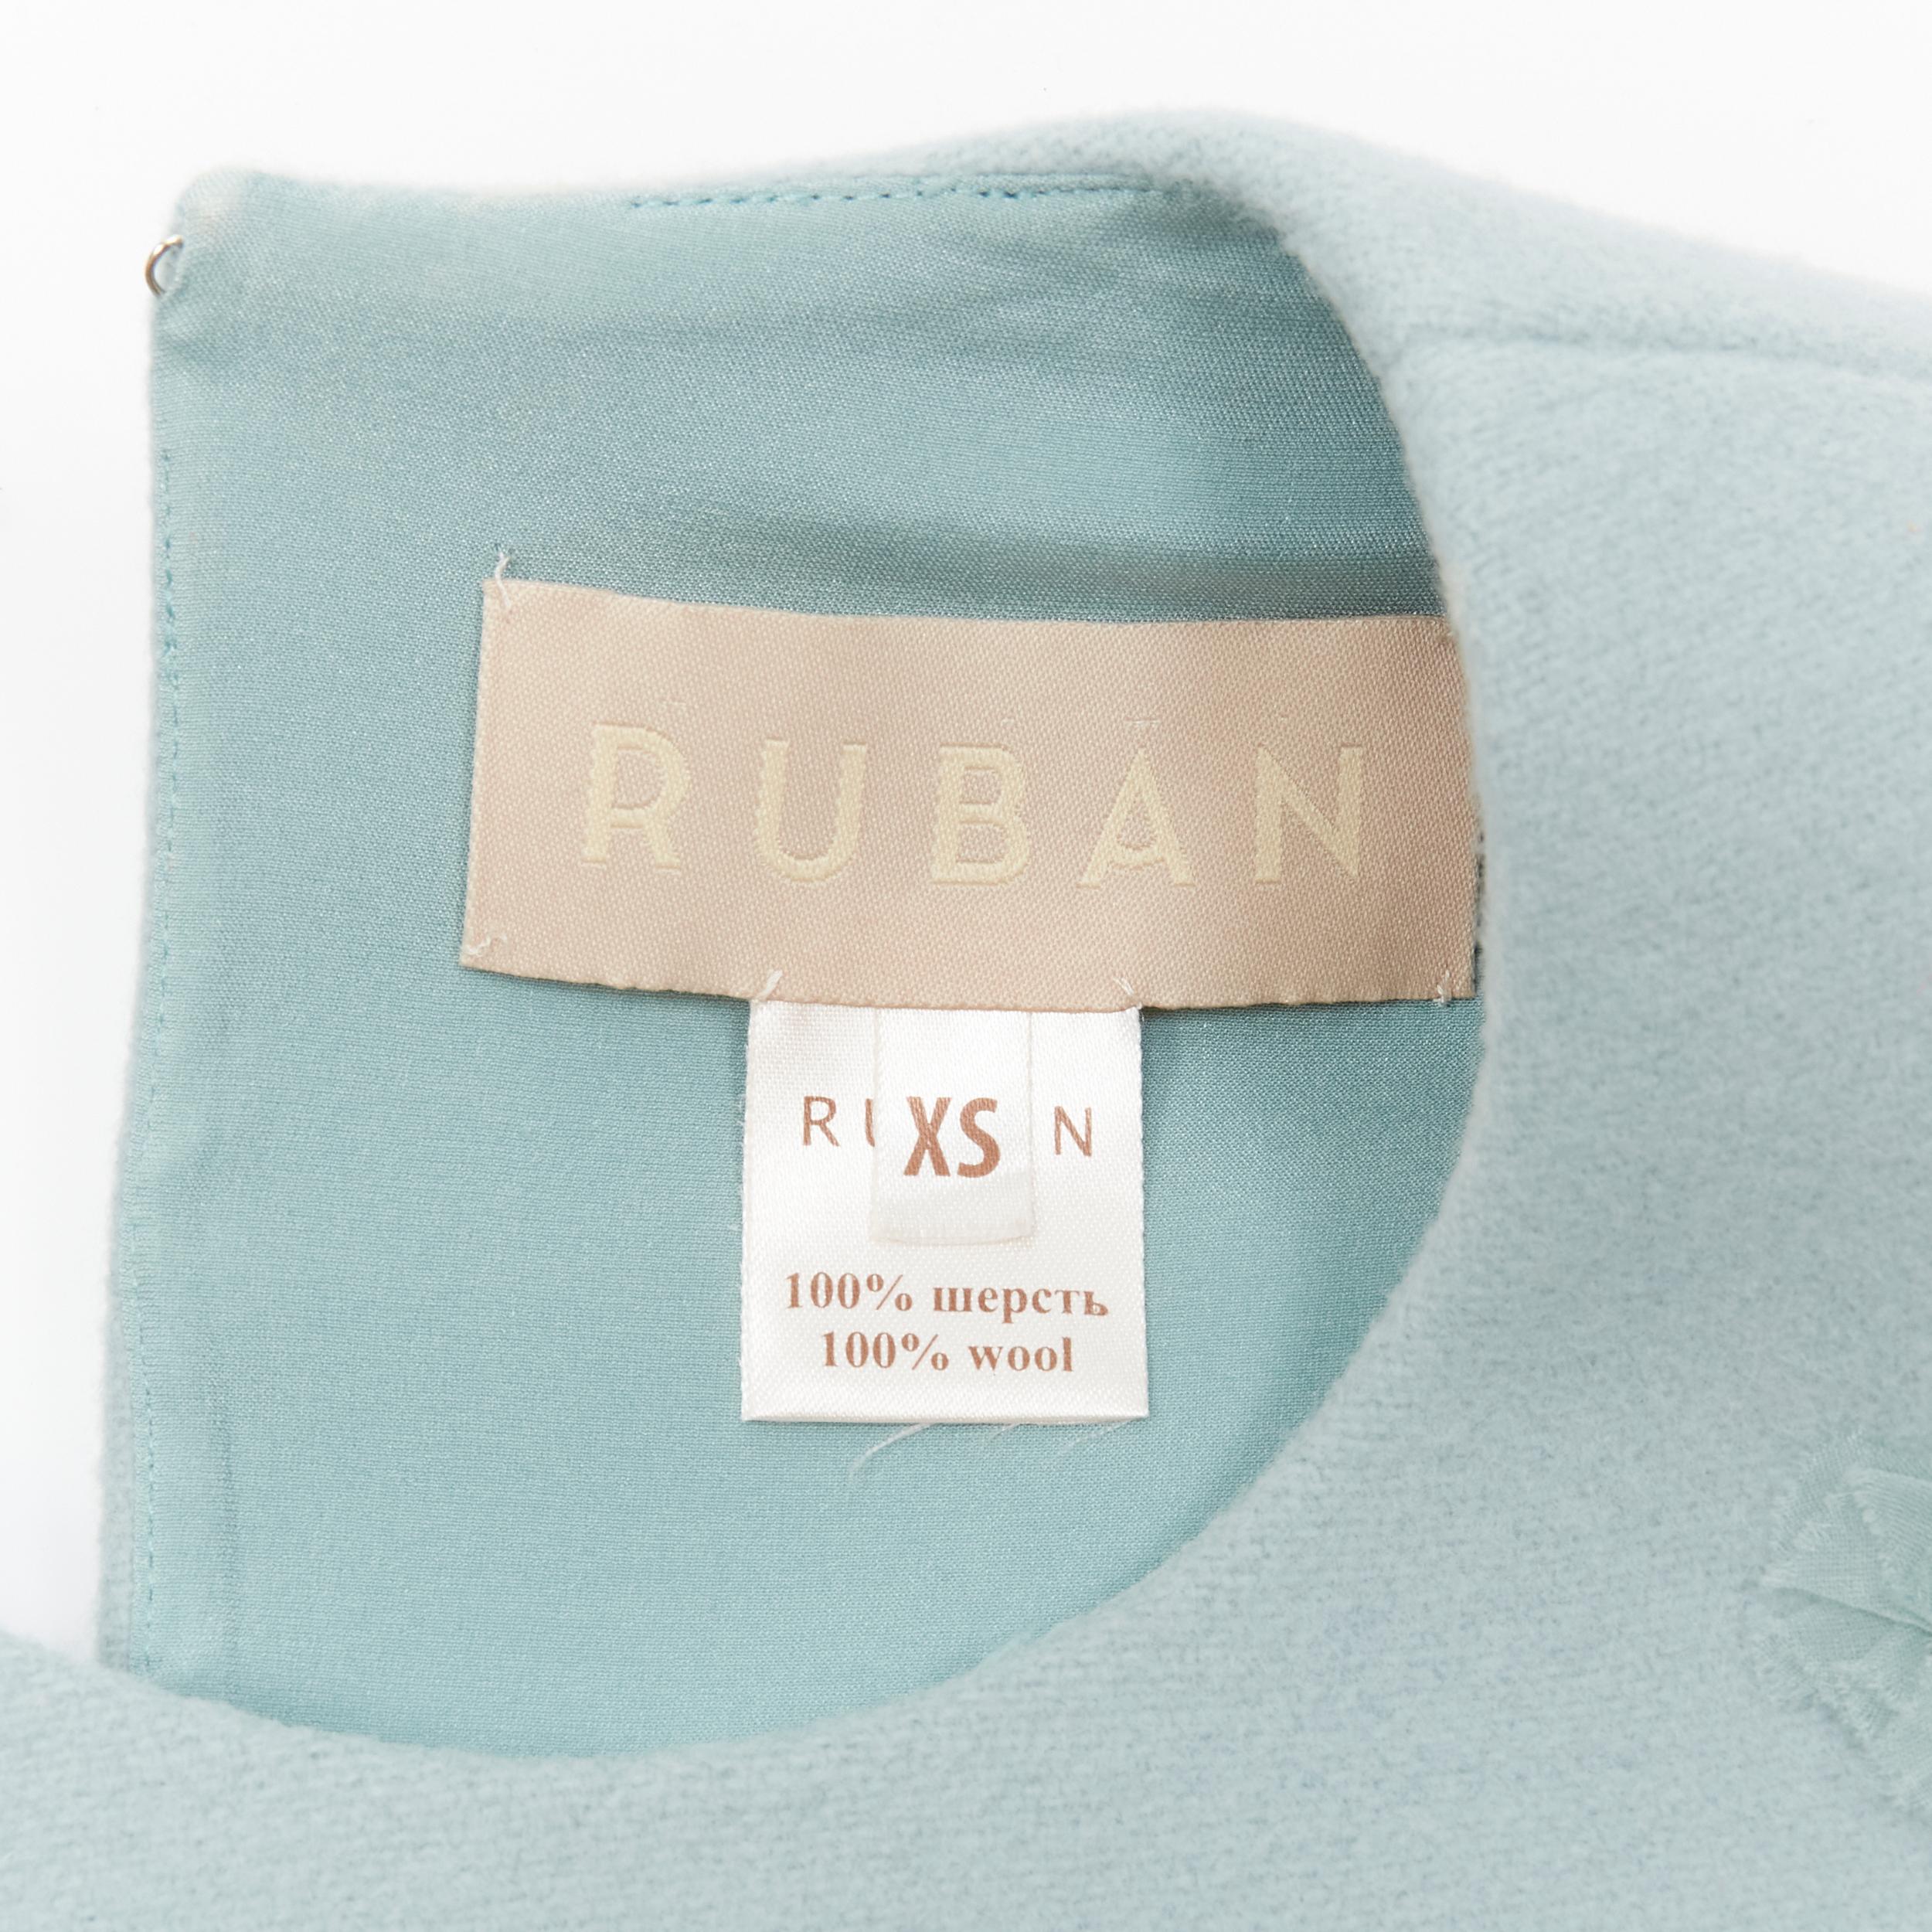 RUBAN Russia 100% wool light blue silk ruffle petal tie side cropped vest top XS 7